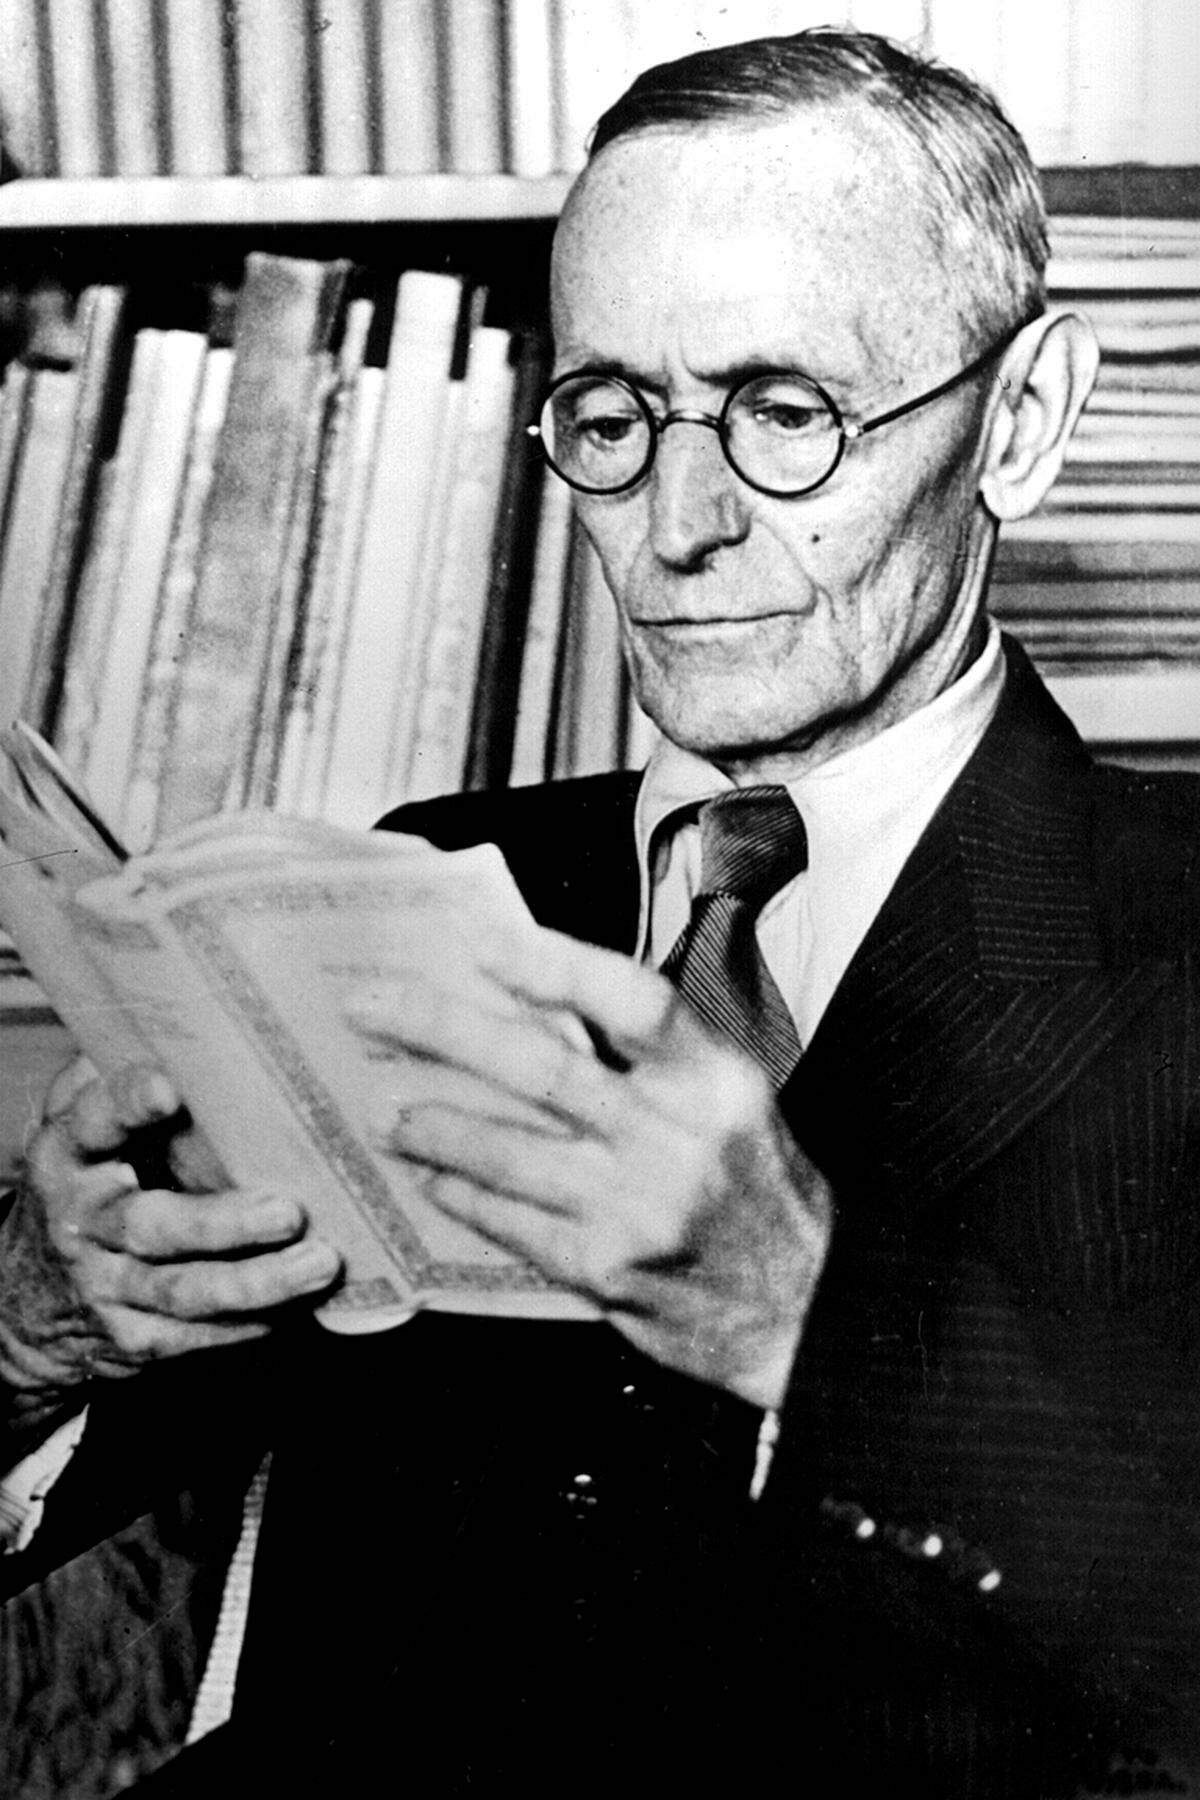 Hermann Hesse (1877 -1962), mit Werken wie "Demian", "Steppenwolf" und "Das Glasperlenspiel" hervorgetretener Lyriker und Erzähler für eine "inspirierte Verfasserschaft, die (...) neben Kühnheit und Tiefe zugleich klassische Humanitätsideale und hohe Stilwerte vertritt".